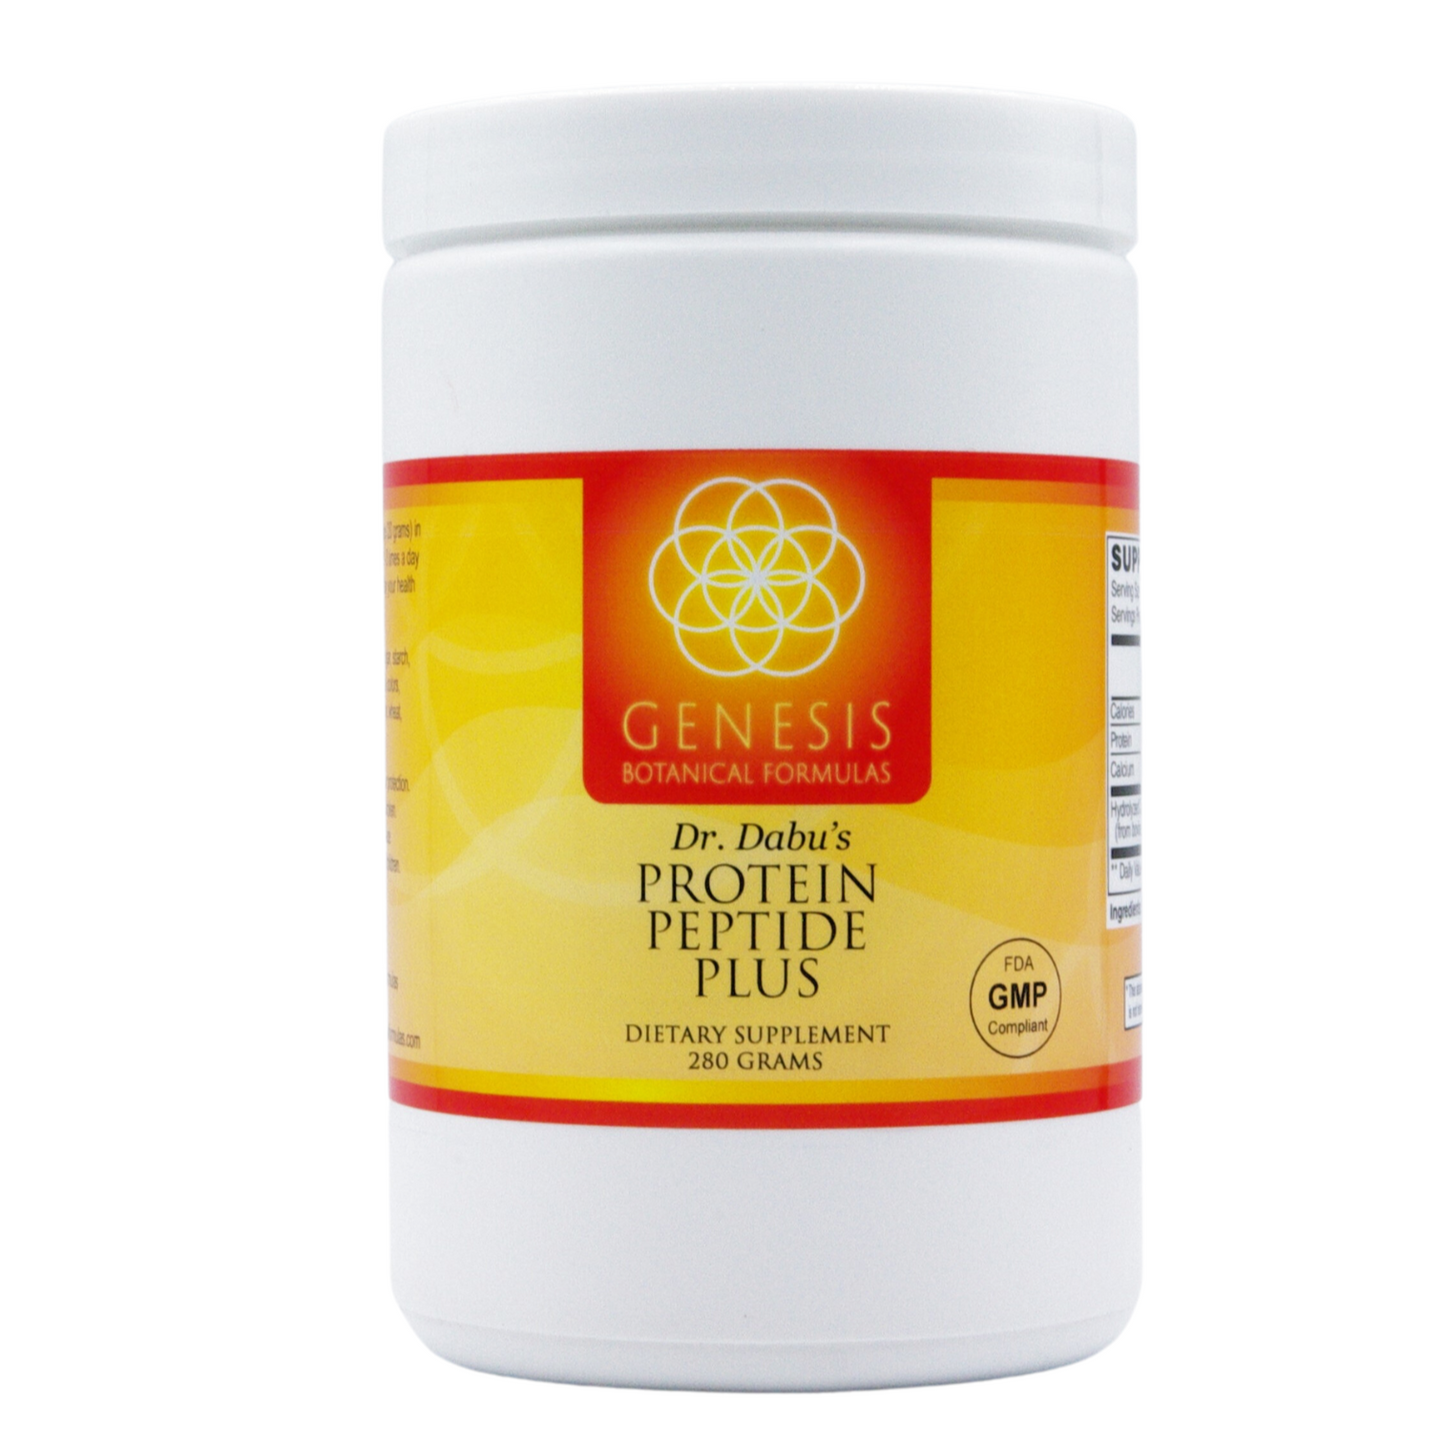 Protein Peptide Plus